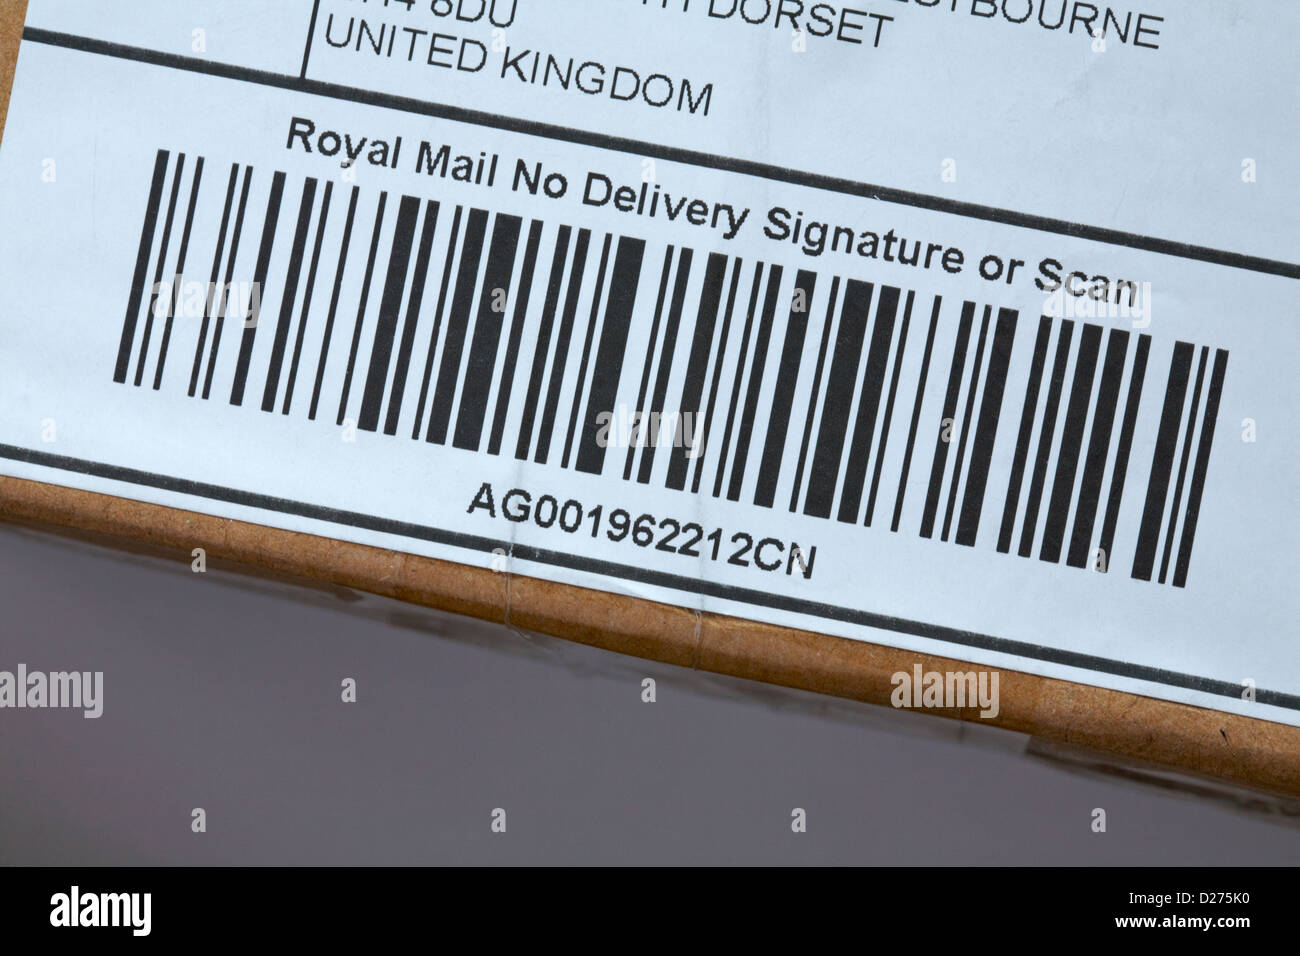 Royal Mail keine Liefersignatur oder Scan-Barcode auf Paketverpackung Stockfoto